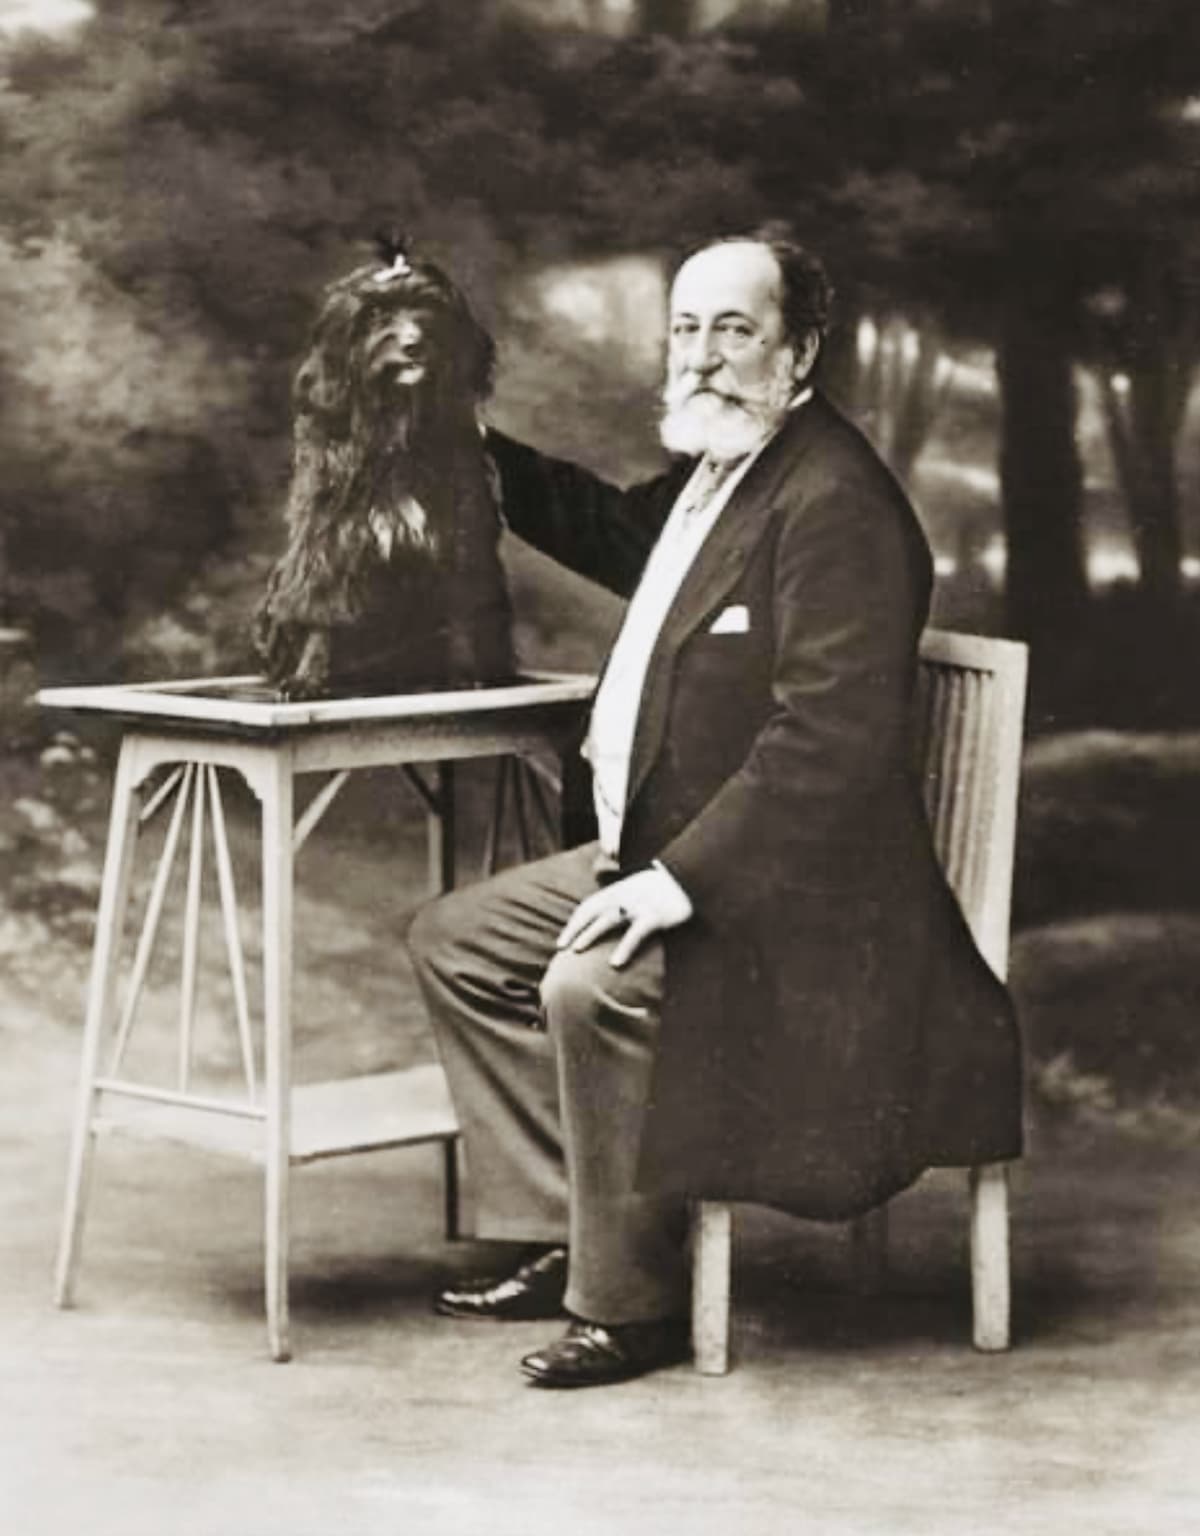 Composer Saint-Saëns with his dog Dalila